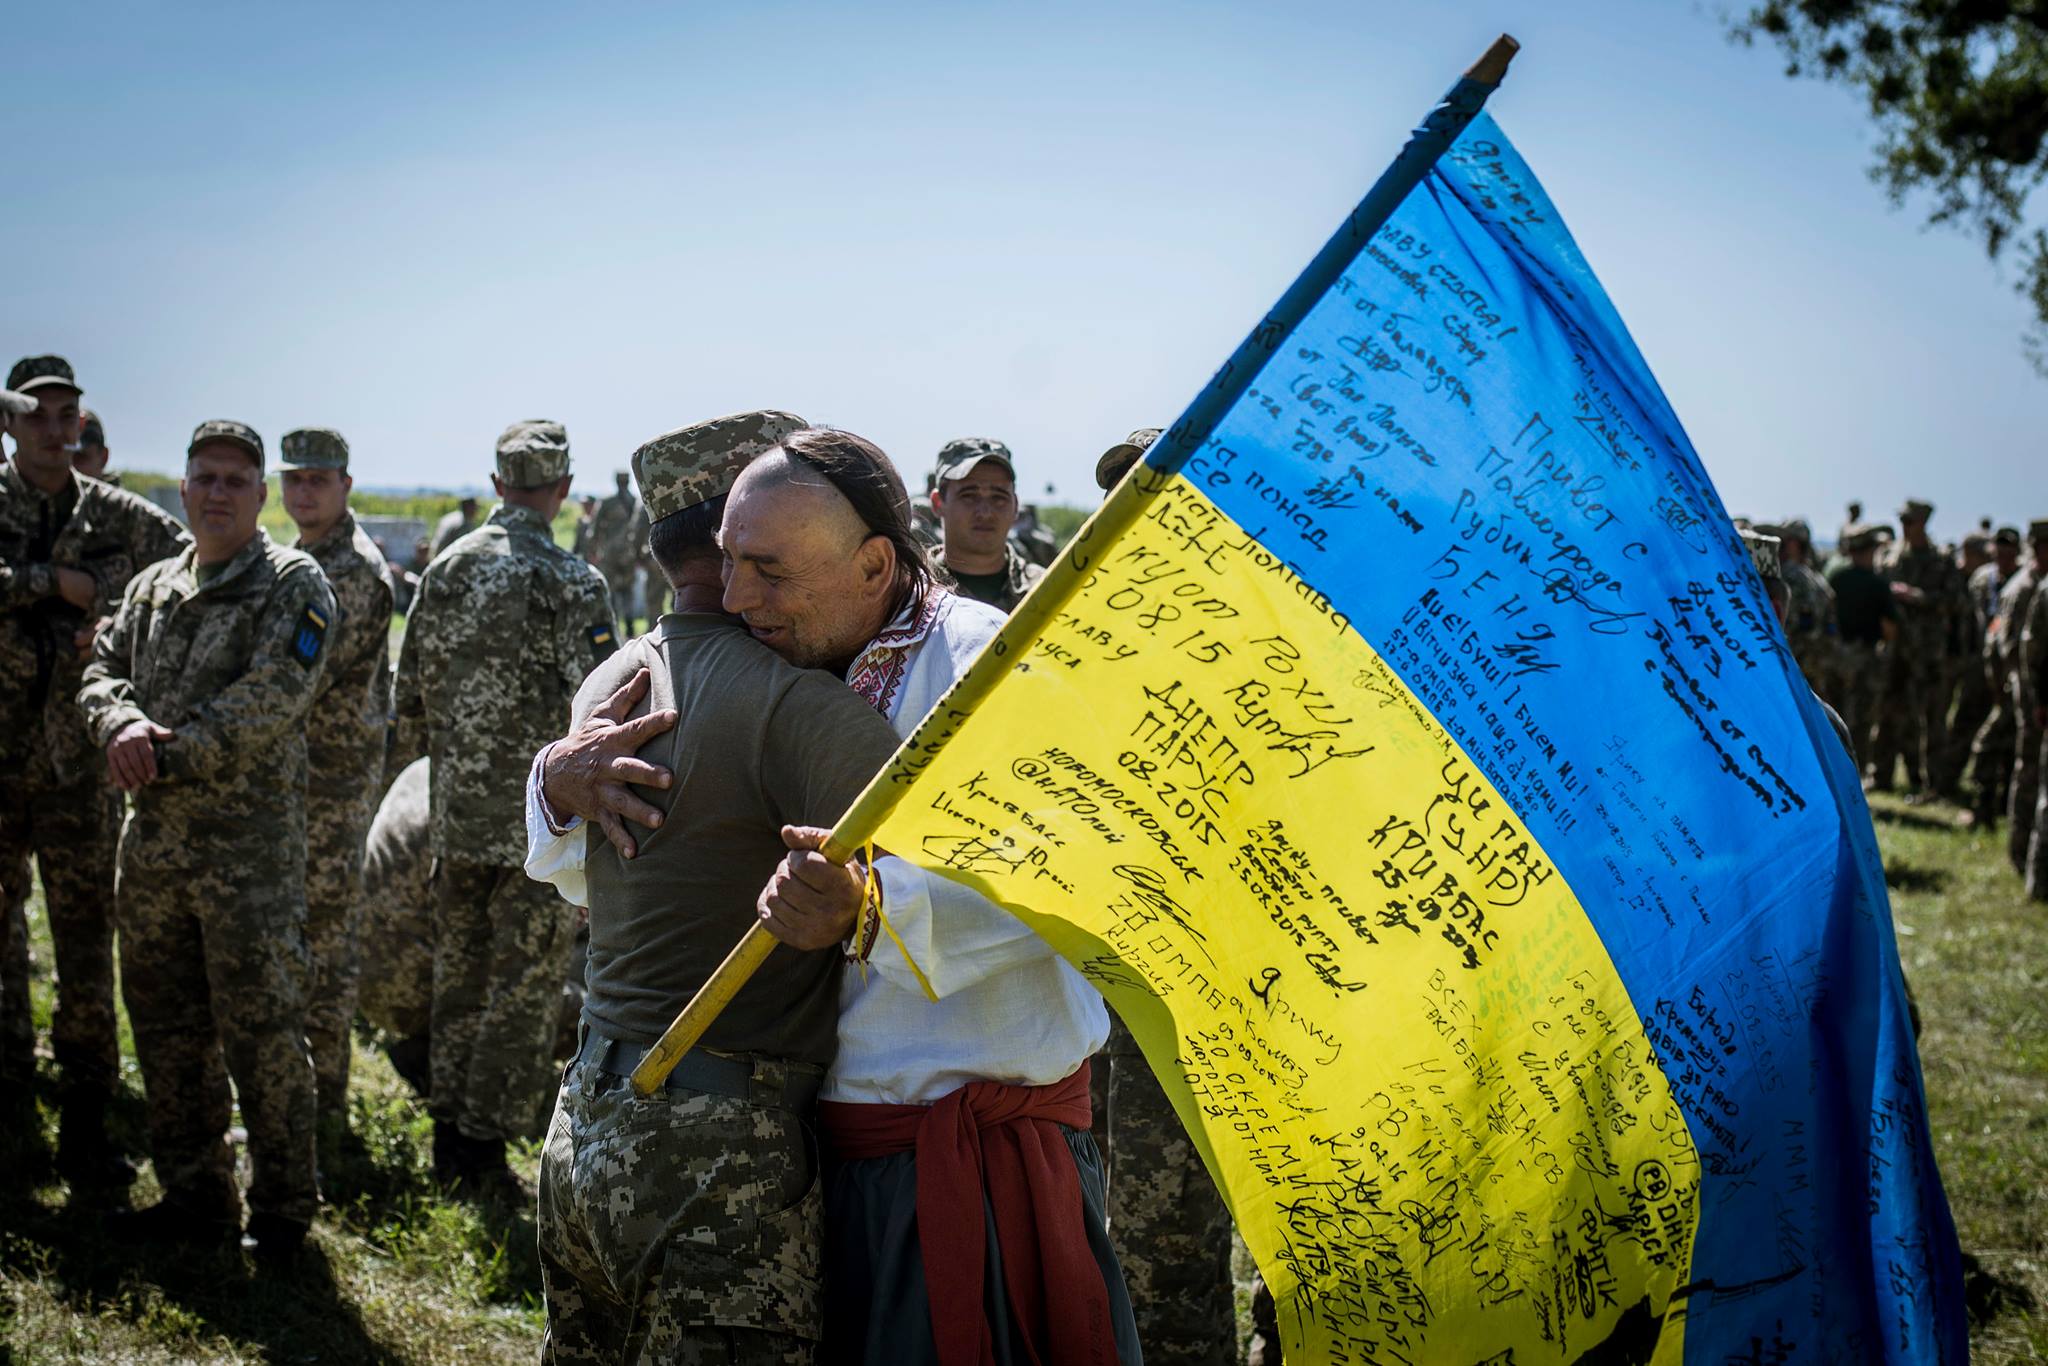 Освободили километры украинской земли на Донбассе: 93-я омбр "Холодный Яр" вернулась домой - мощные кадры